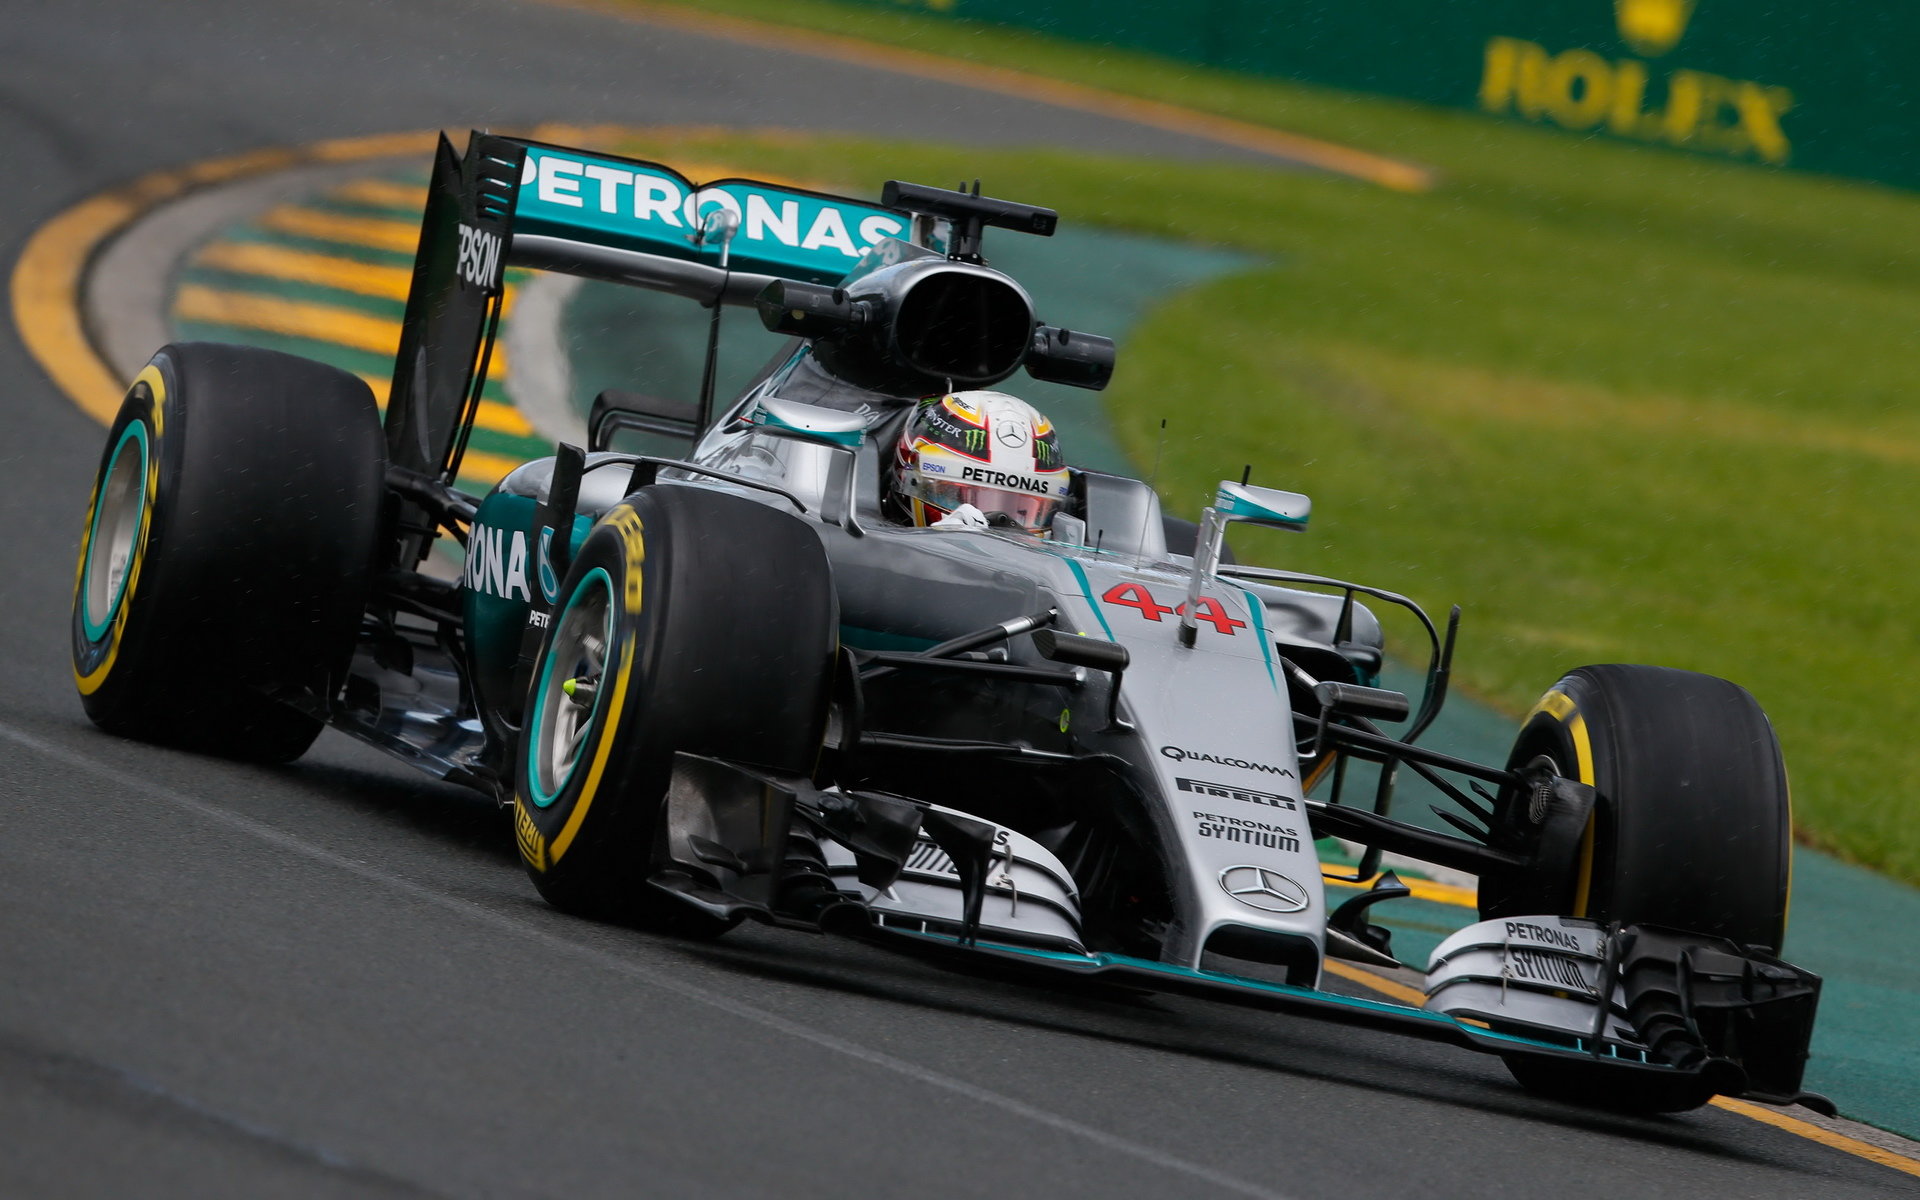 Lewis Hamilton při pátečním tréninku v Melbourne